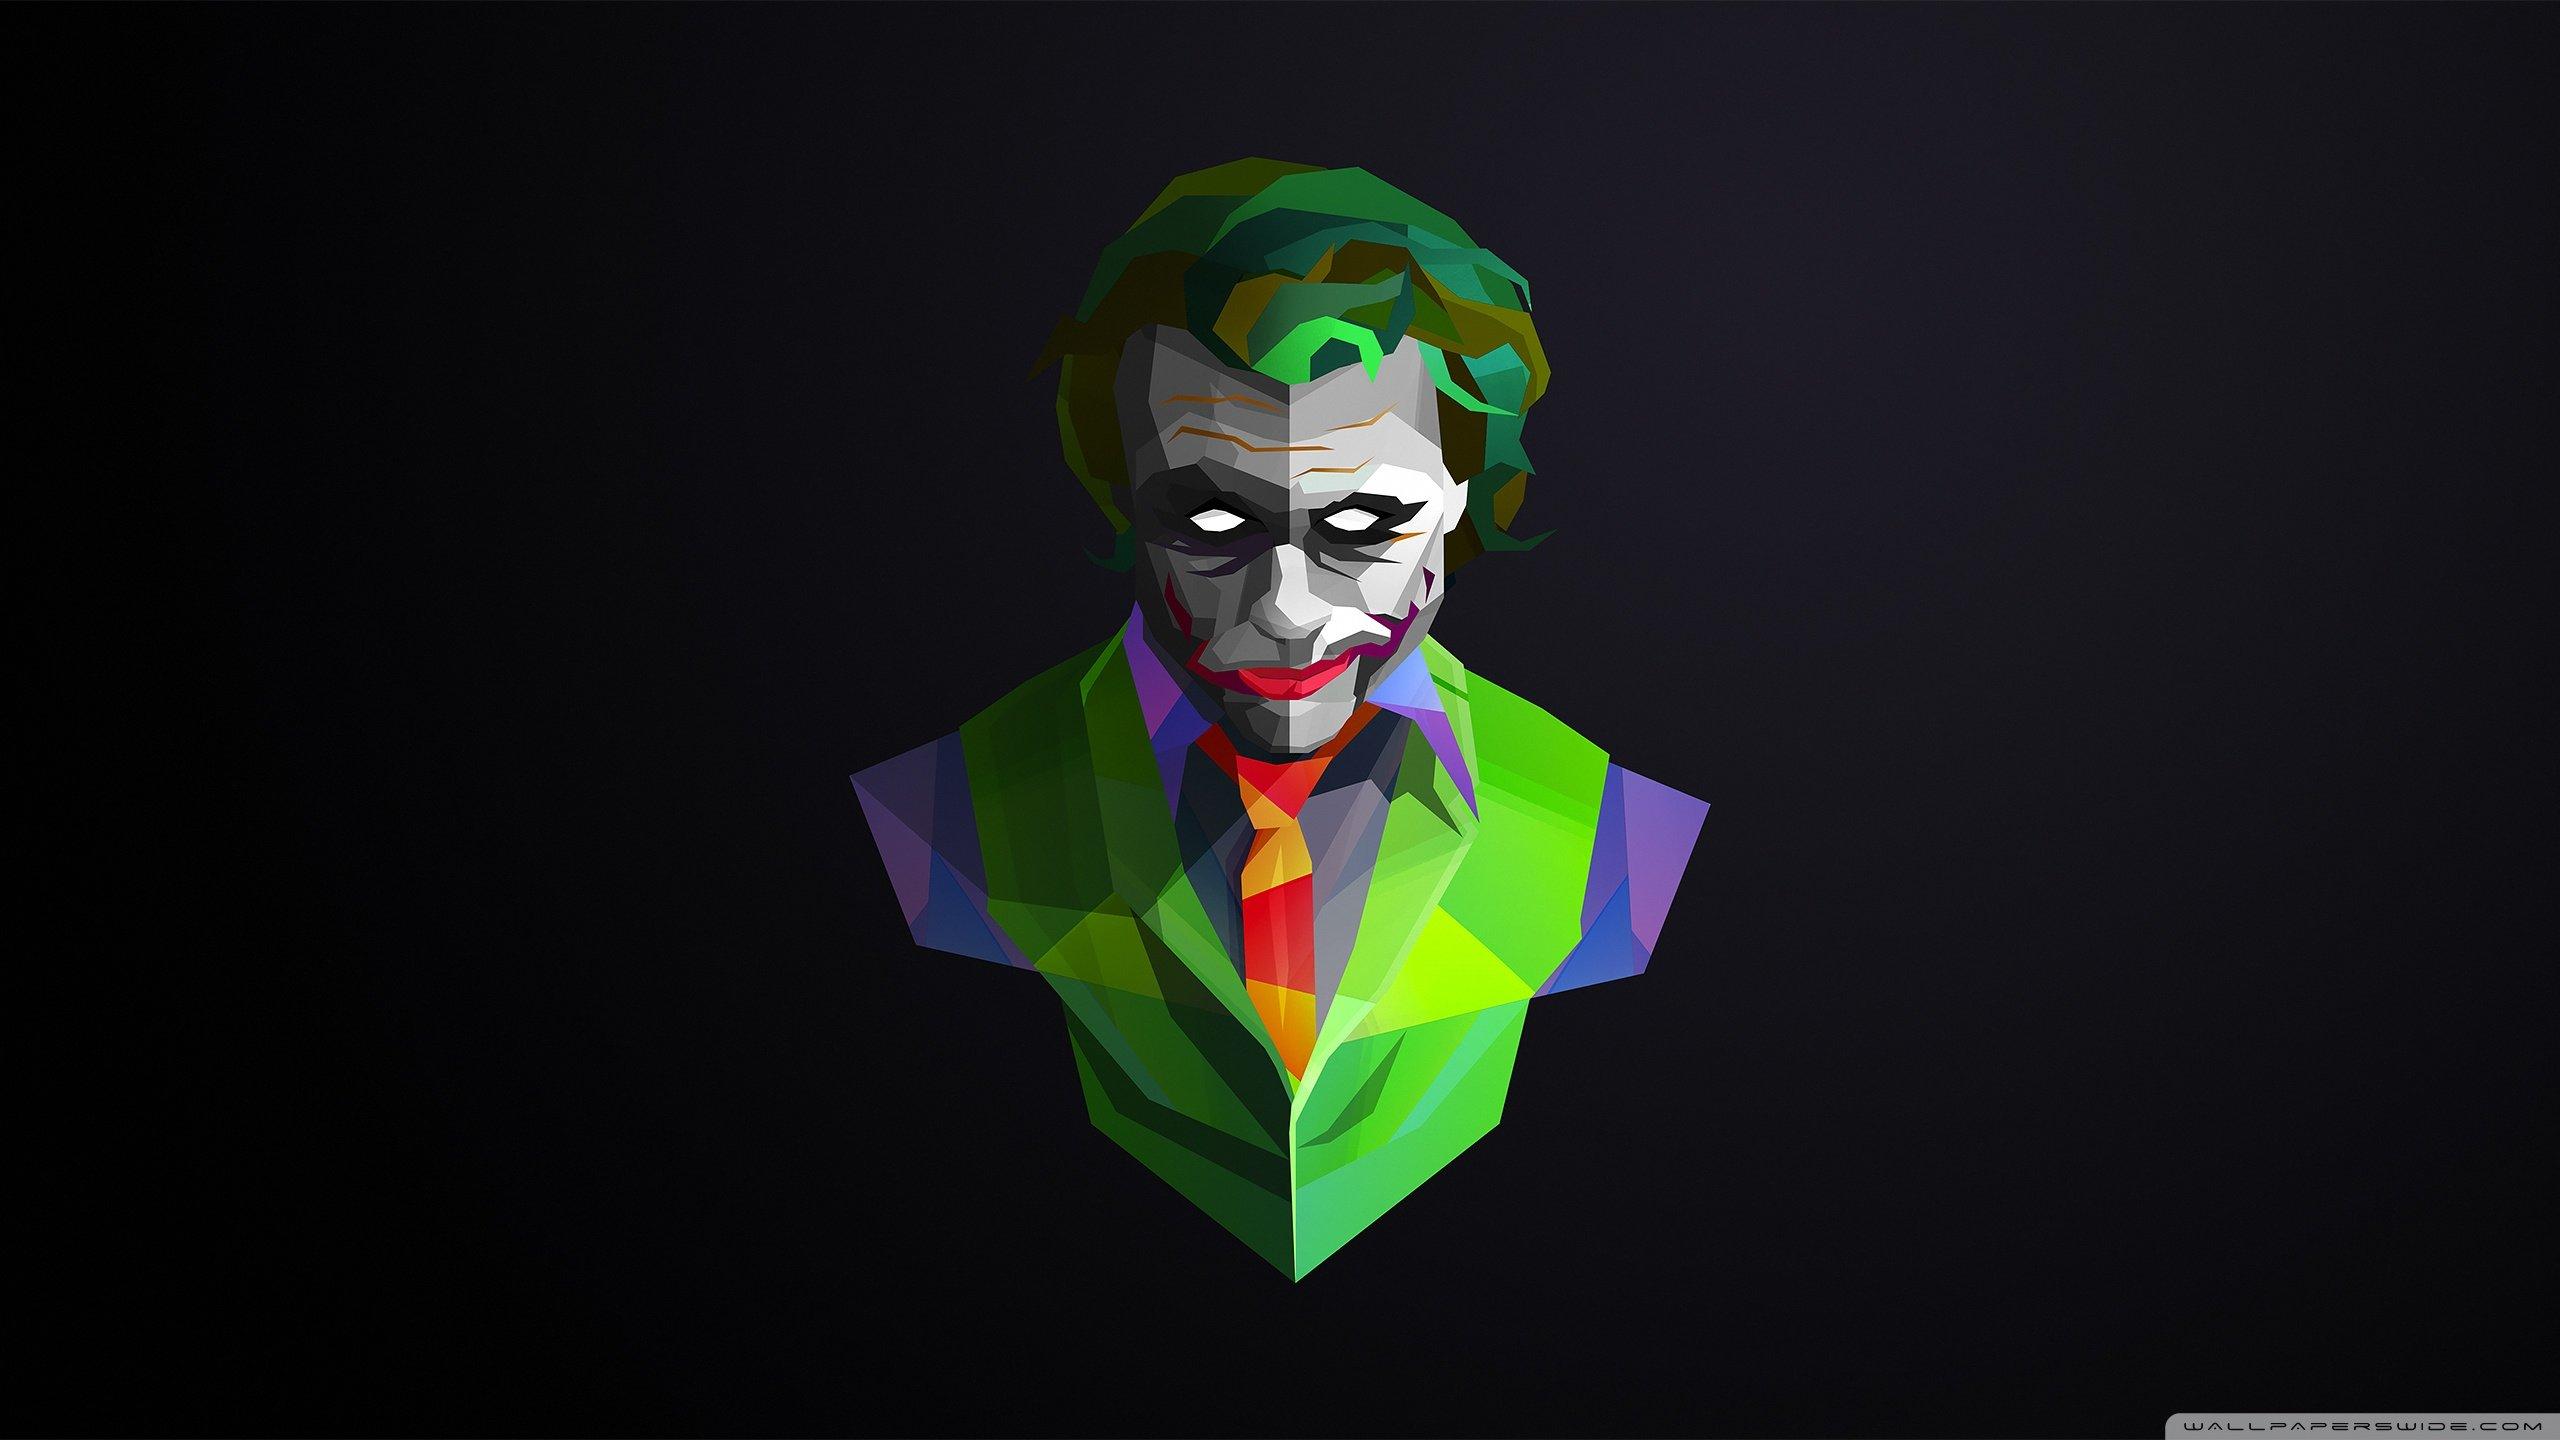 of Joker 4K wallpaper for your desktop or mobile screen